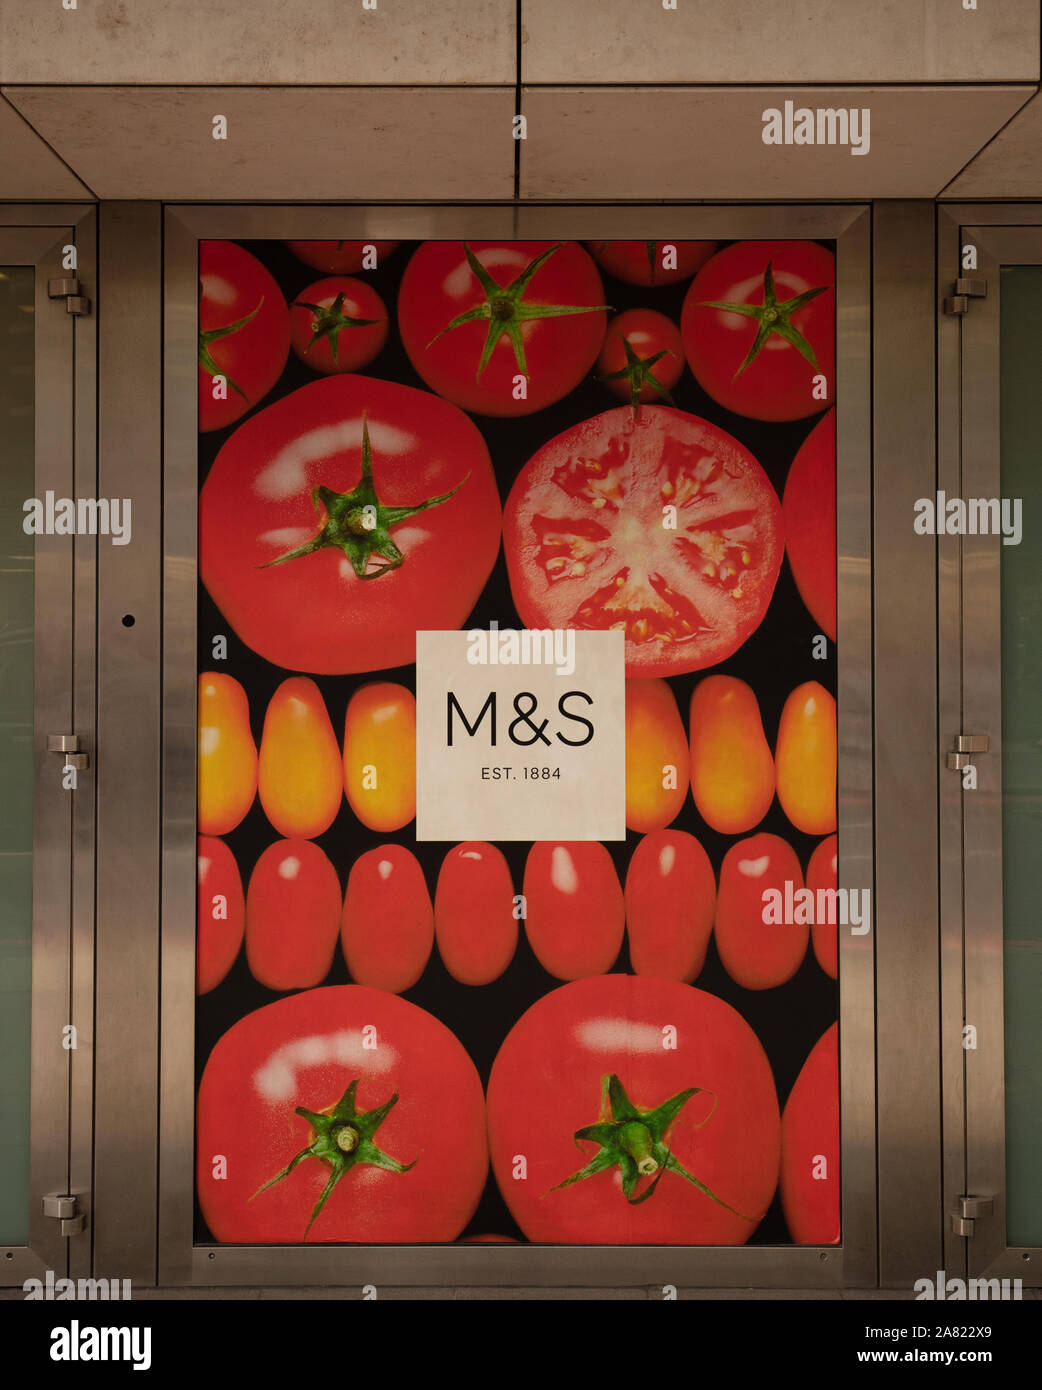 M&S logo seen in the City of London, UK, in November. Stock Photo